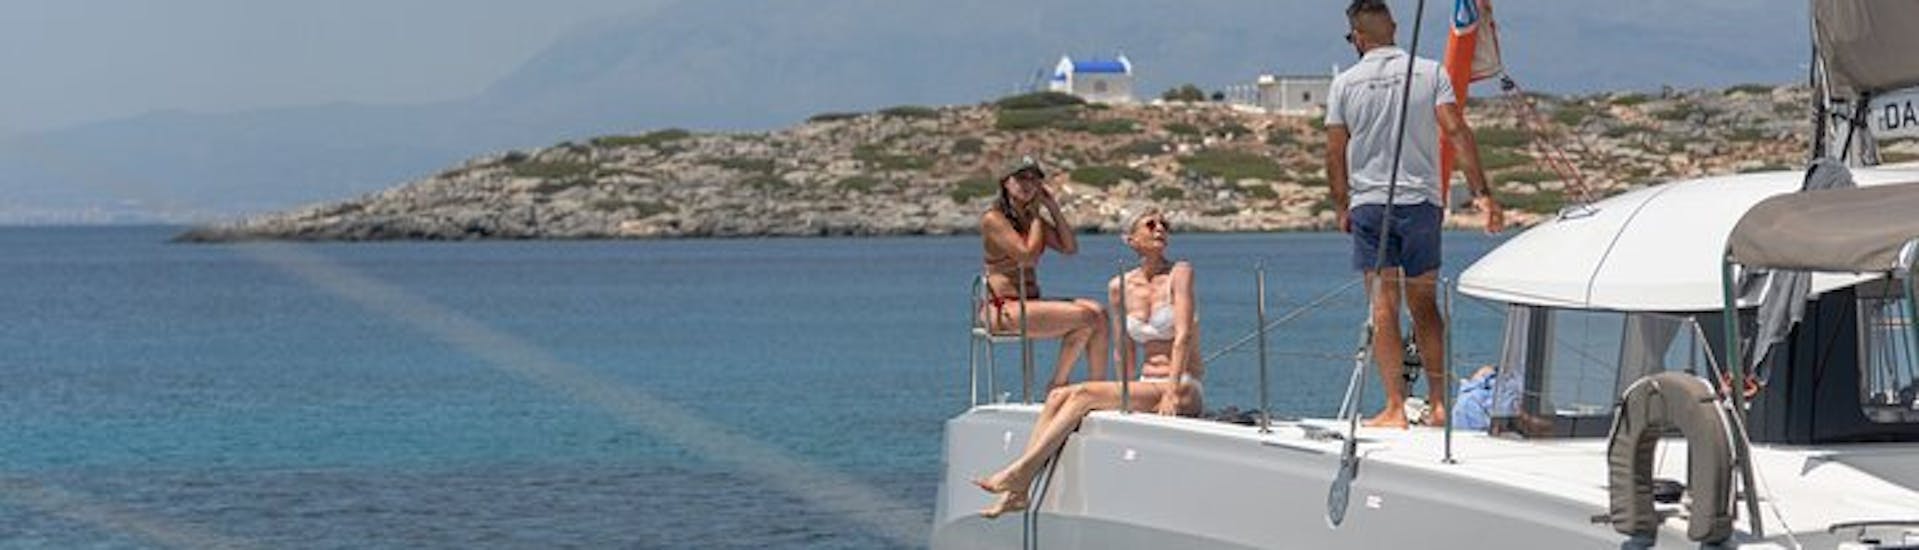 Balade en catamaran d'Héraklion à l'île de Dia - Journée.